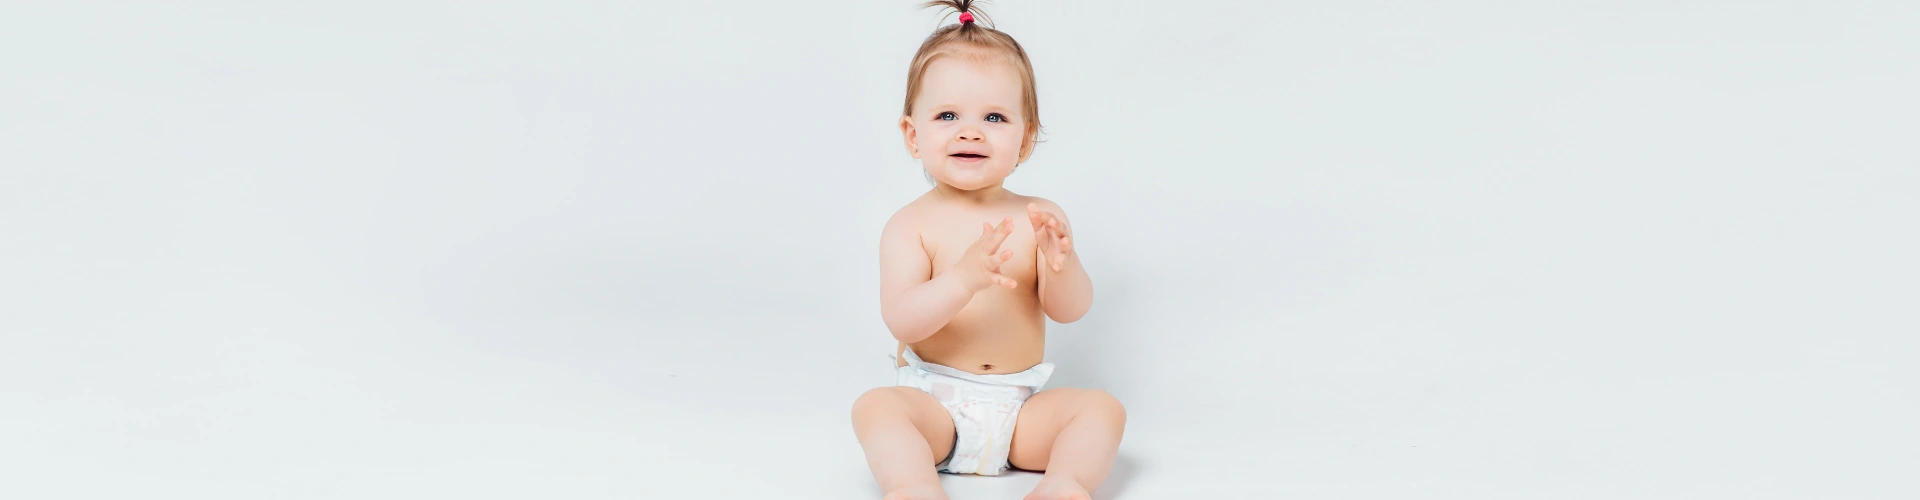 Bebeklerde Pişik Belirtileri Nelerdir?